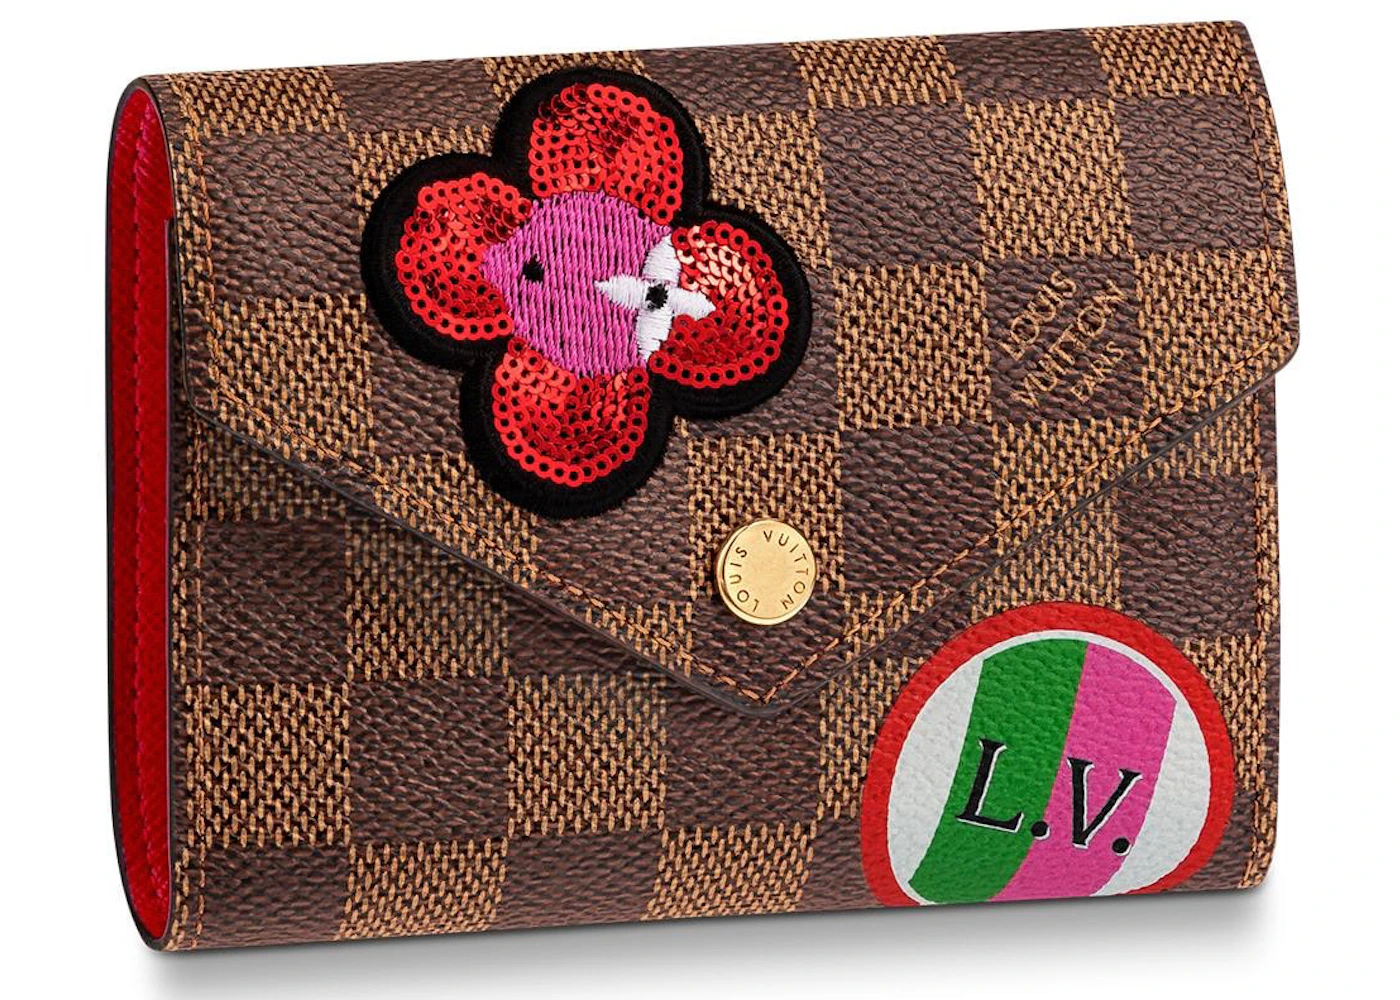 Louis Vuitton Cherry Damier Ebene Canvas Caissa Flap Bag Louis Vuitton